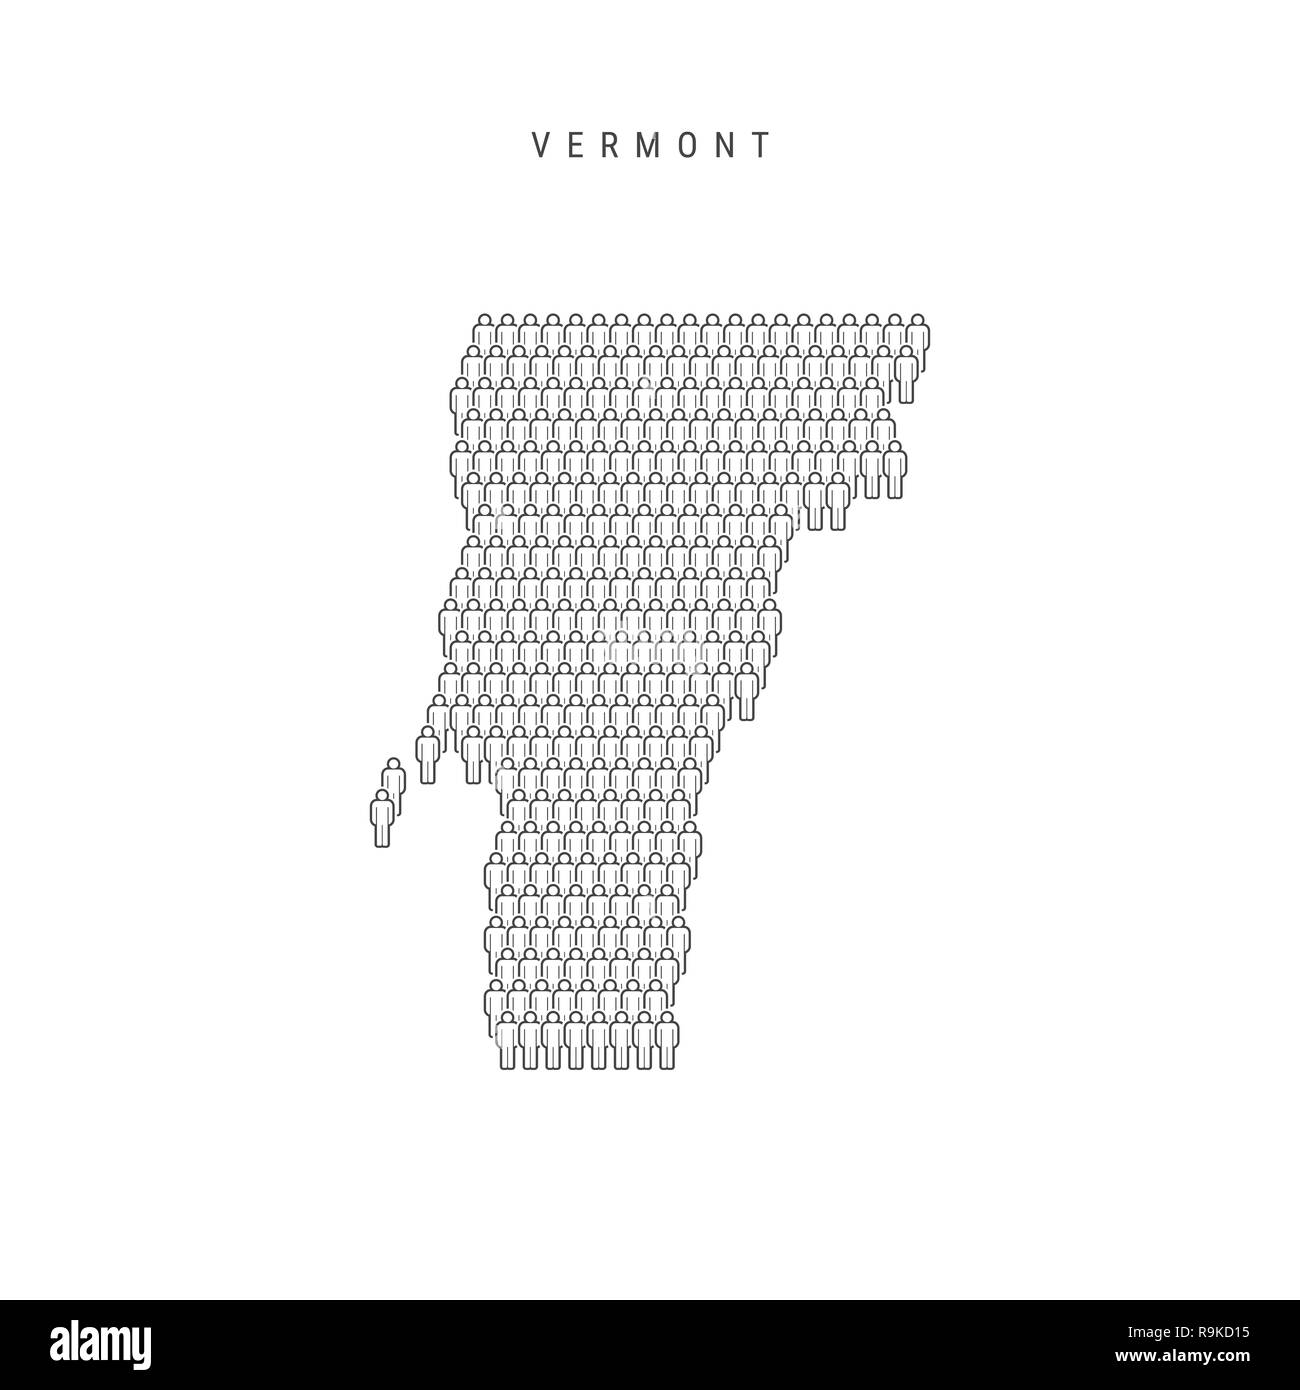 Leute Karte von Vermont, USA. Stilisierte Silhouette, Leute in der Form einer Karte von Vermont. Vermont Bevölkerung. Abbildung isoliert auf Whit Stockfoto